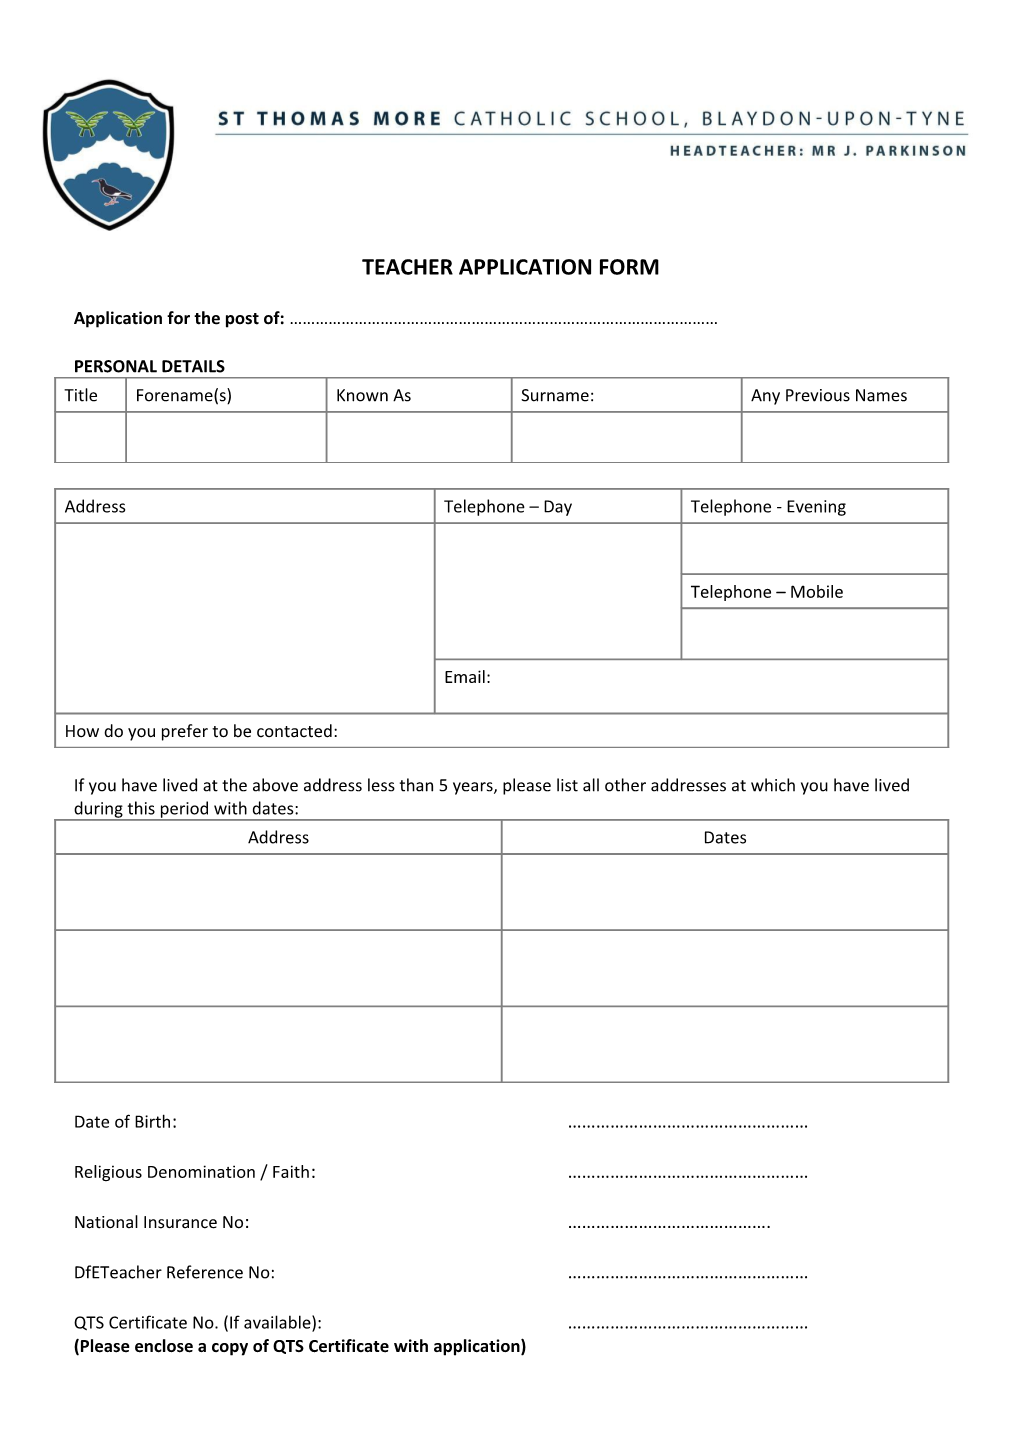 Teacher Application Form 2015